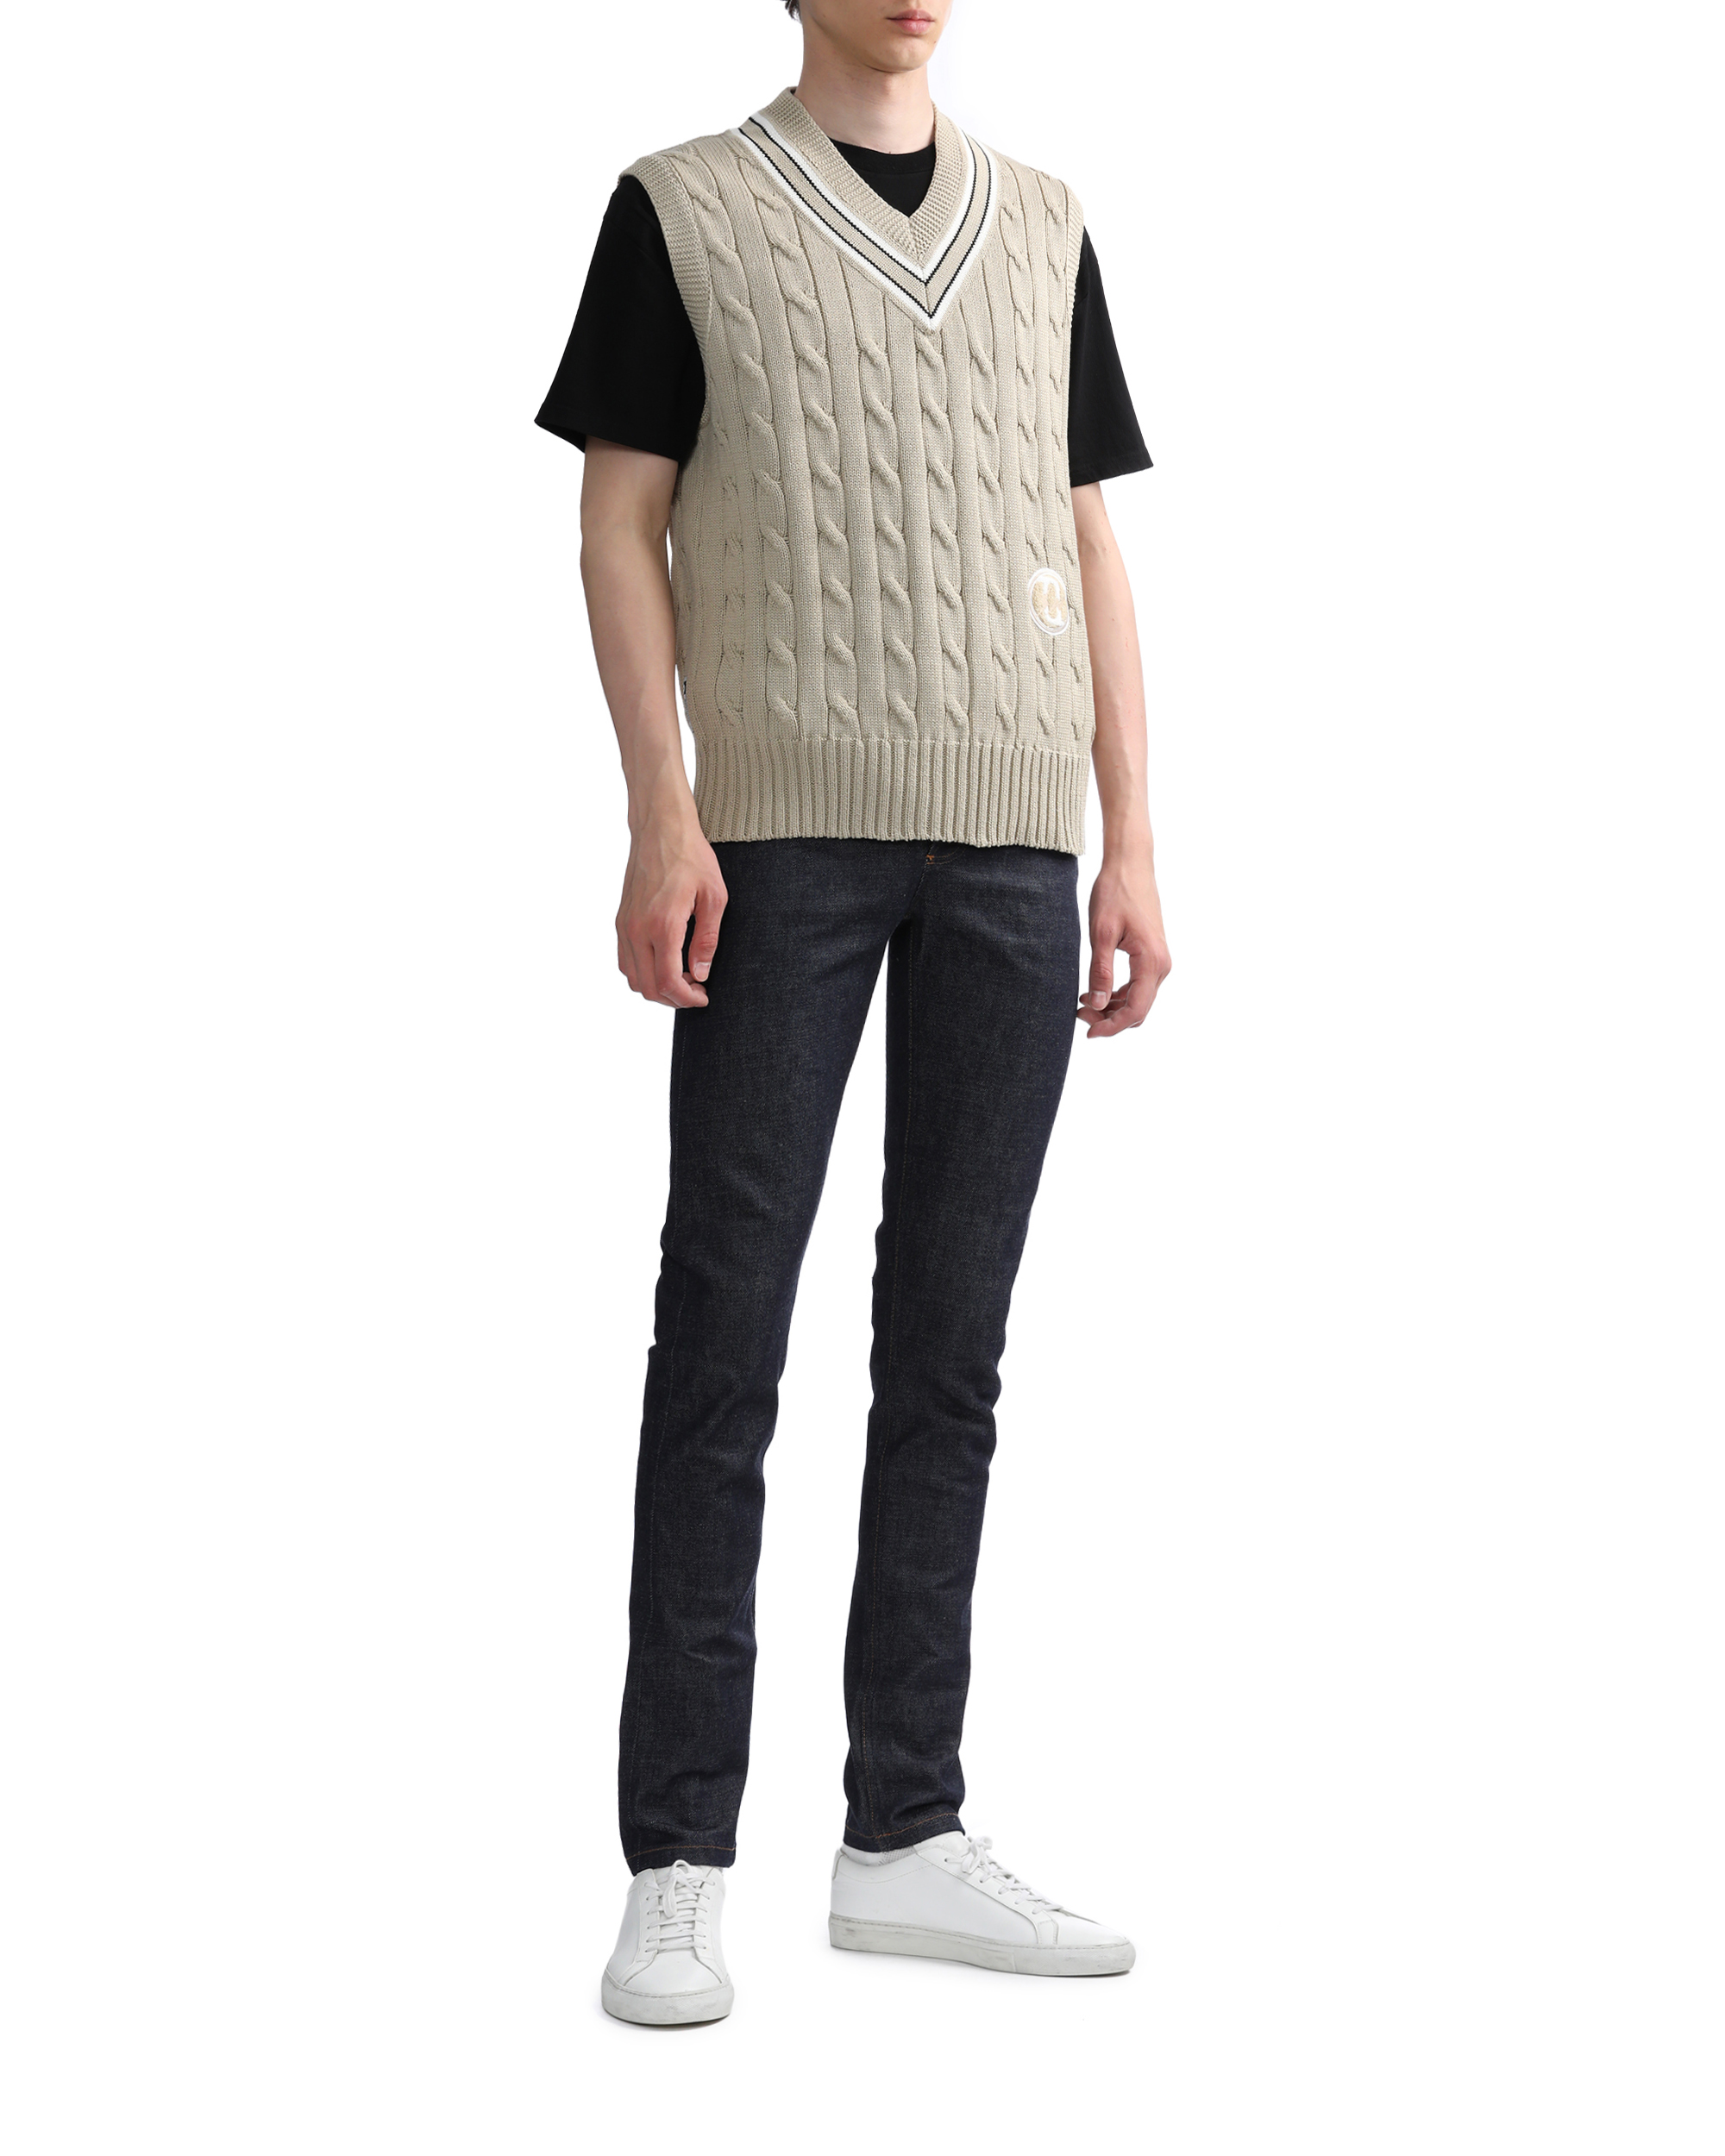 SEQUEL Cable knit vest | ITeSHOP